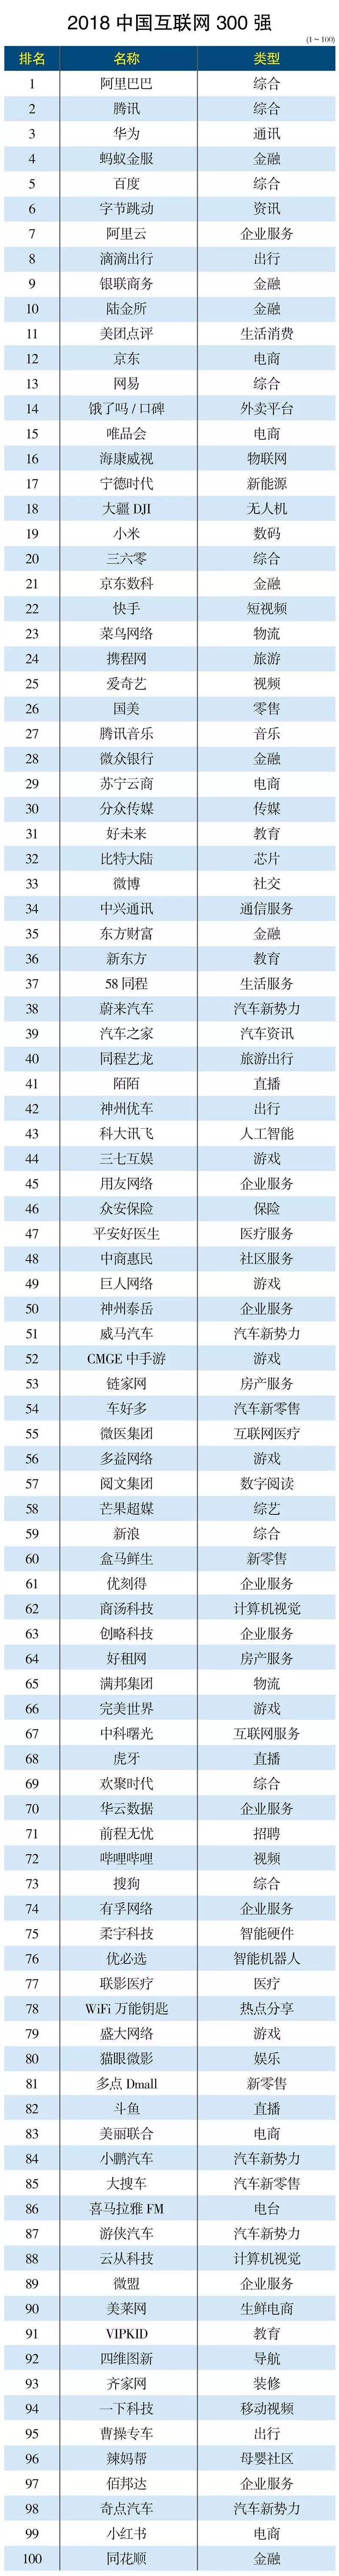 2018年中国互联网300强排行榜